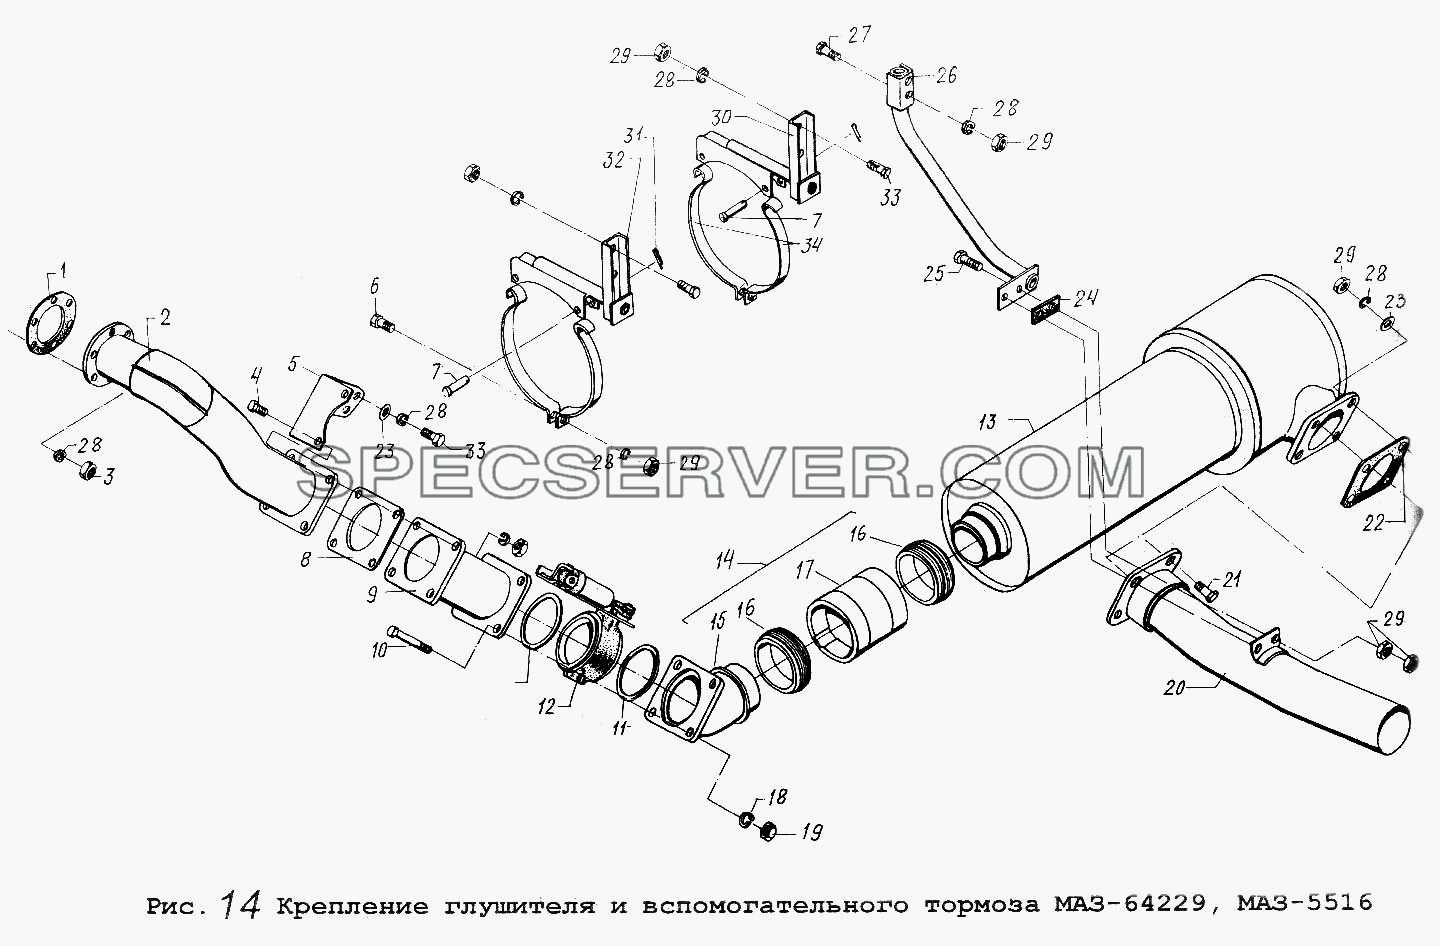 Крепление глушителя и вспомогательного тормоза МАЗ-64229, МАЗ-5516 для МАЗ-64229 (список запасных частей)